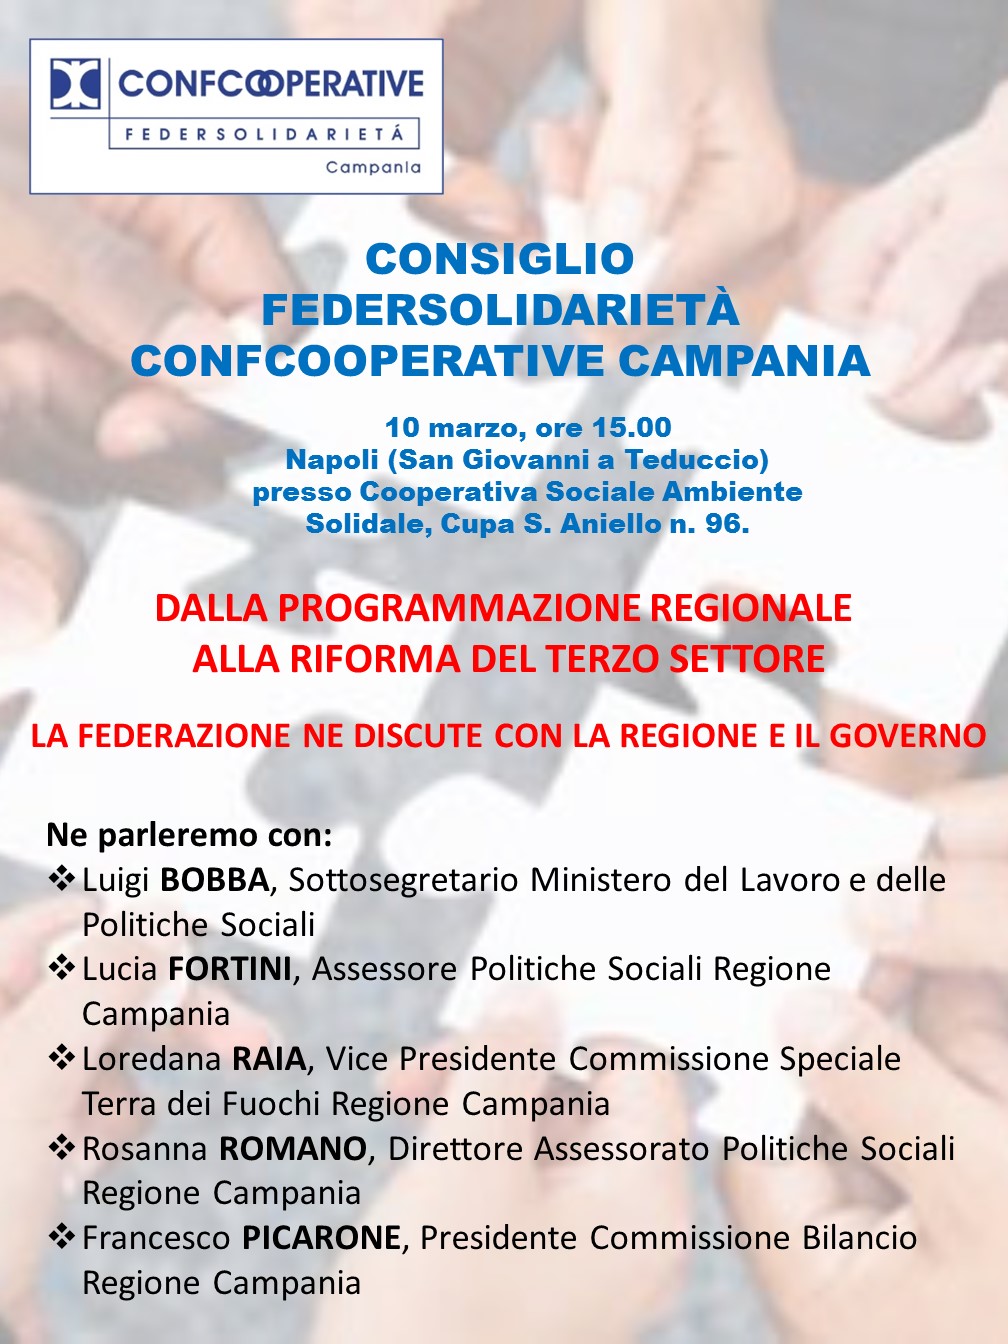 Federsolidarietà Campania incontra la Regione Campania e il Governo